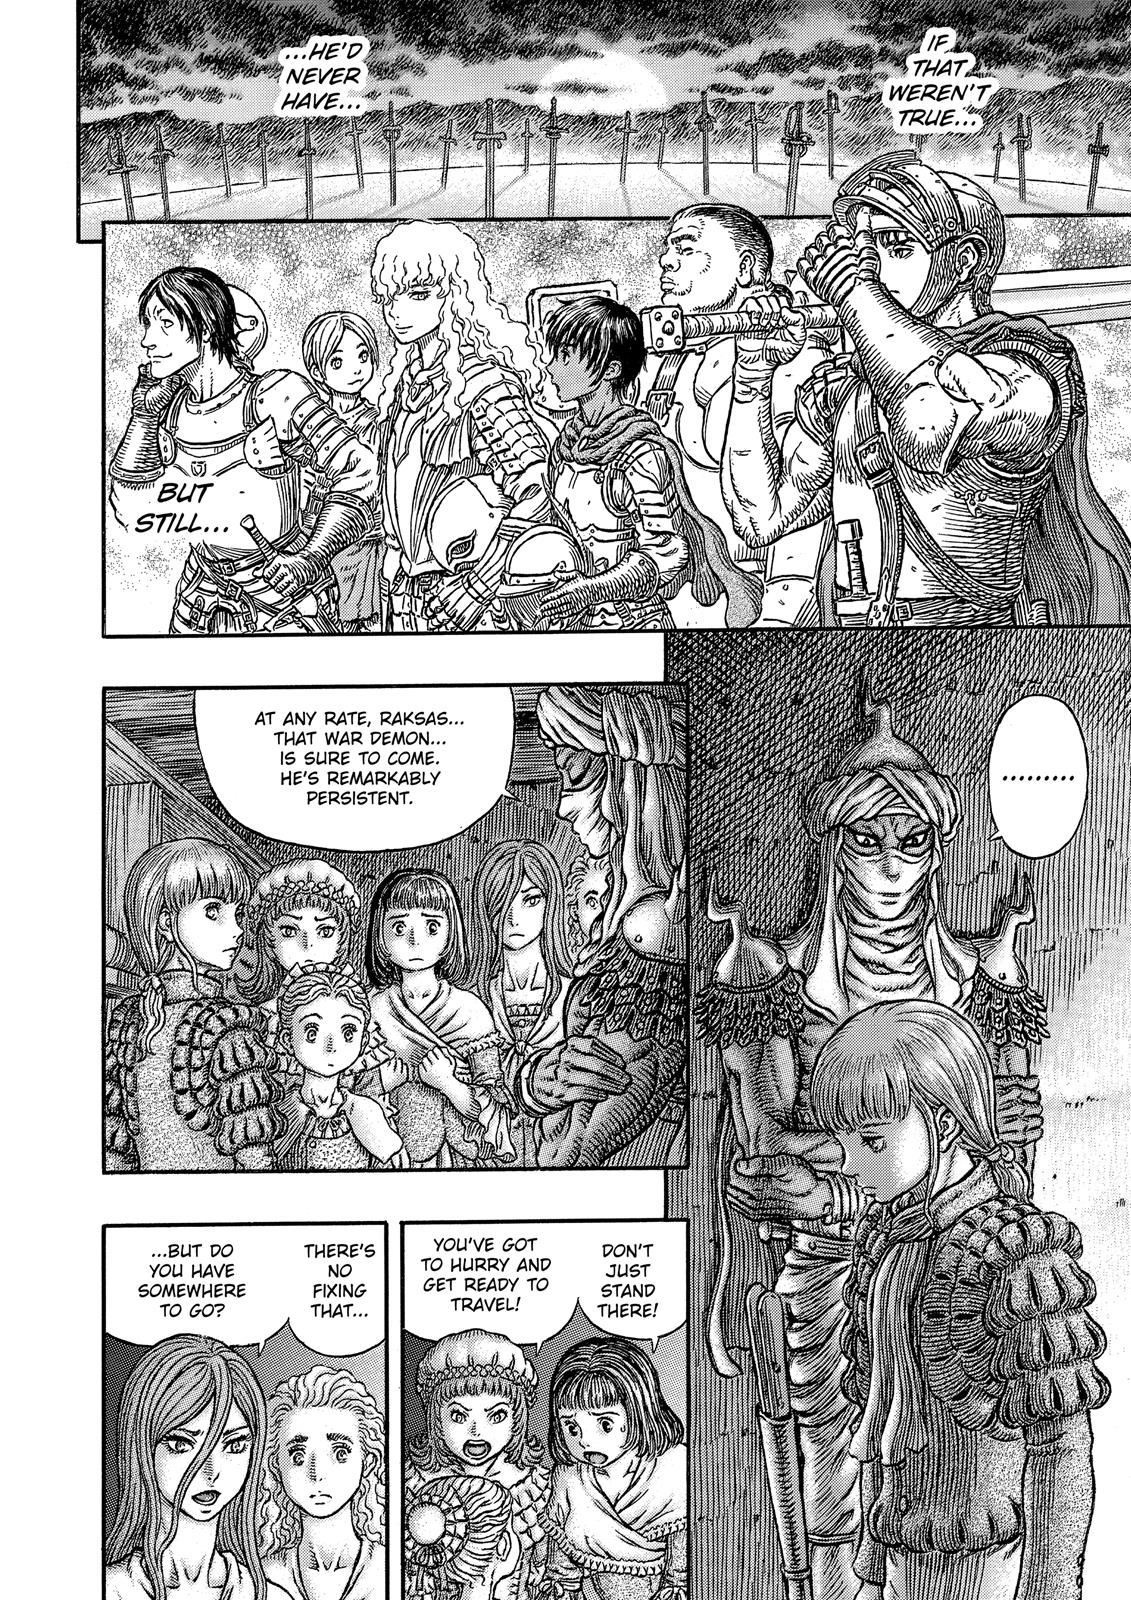 Berserk Manga Chapter 339 image 17